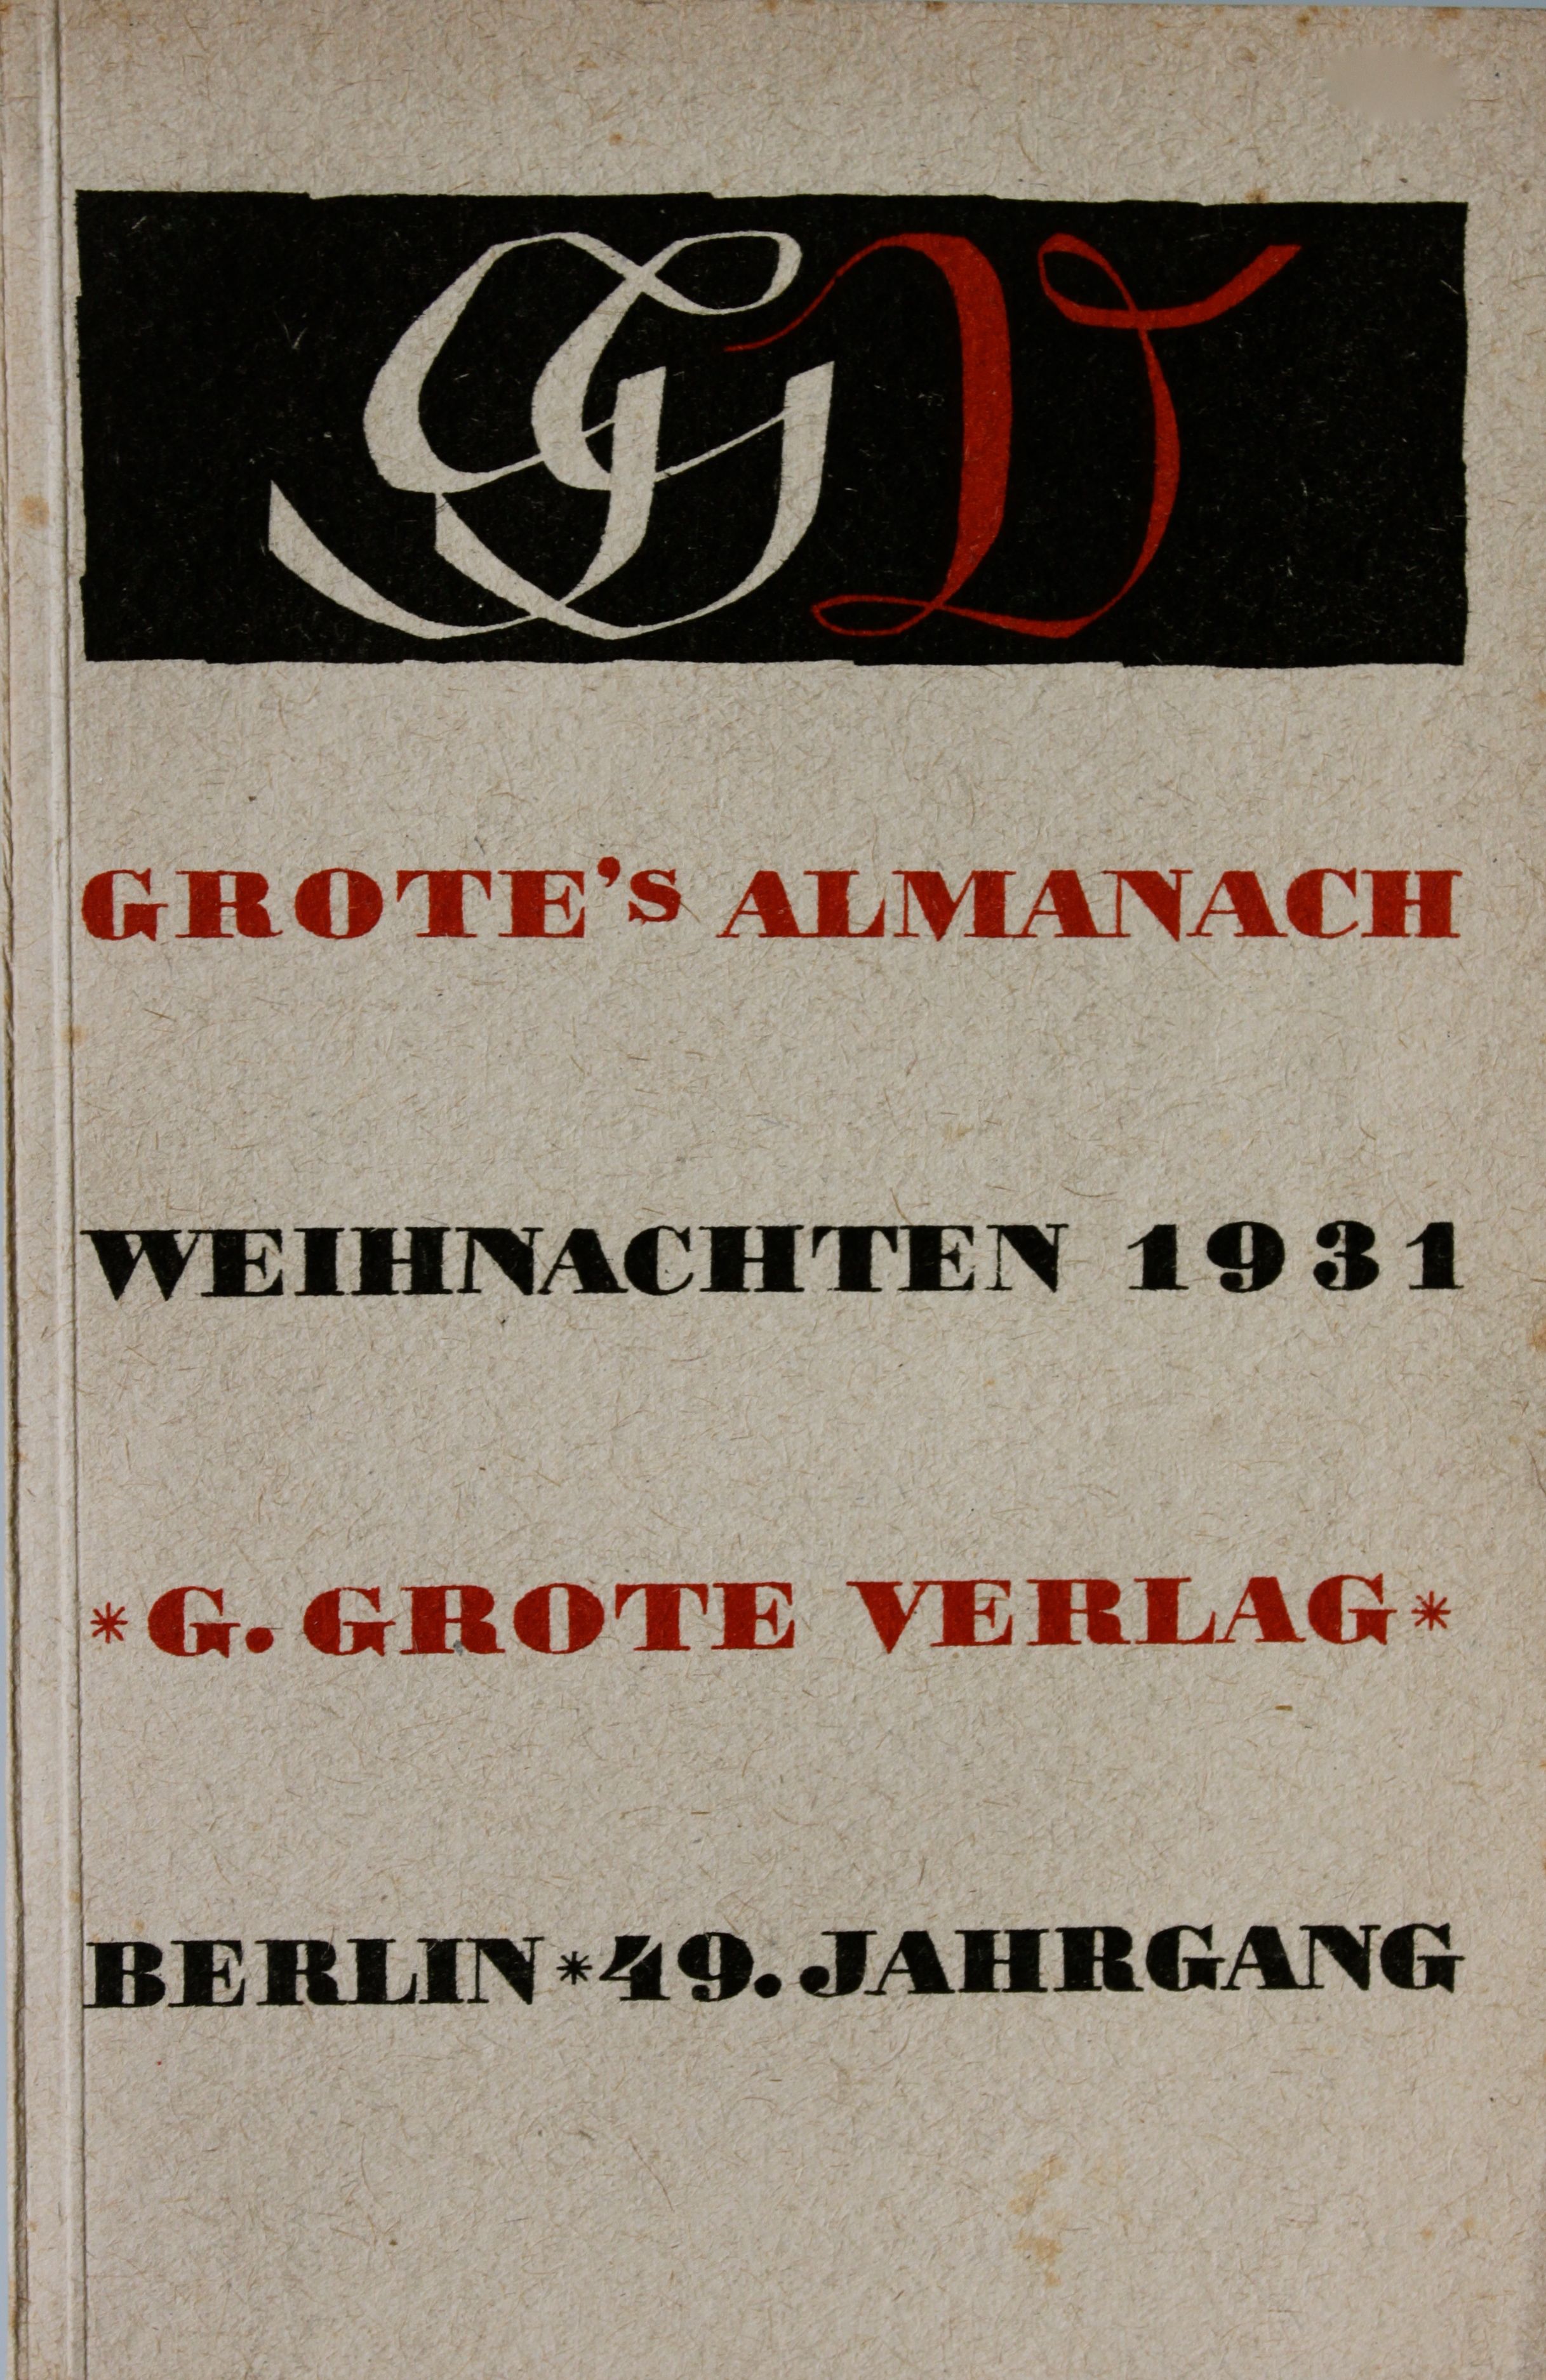 Grote's Almanach Weihnachten 1931